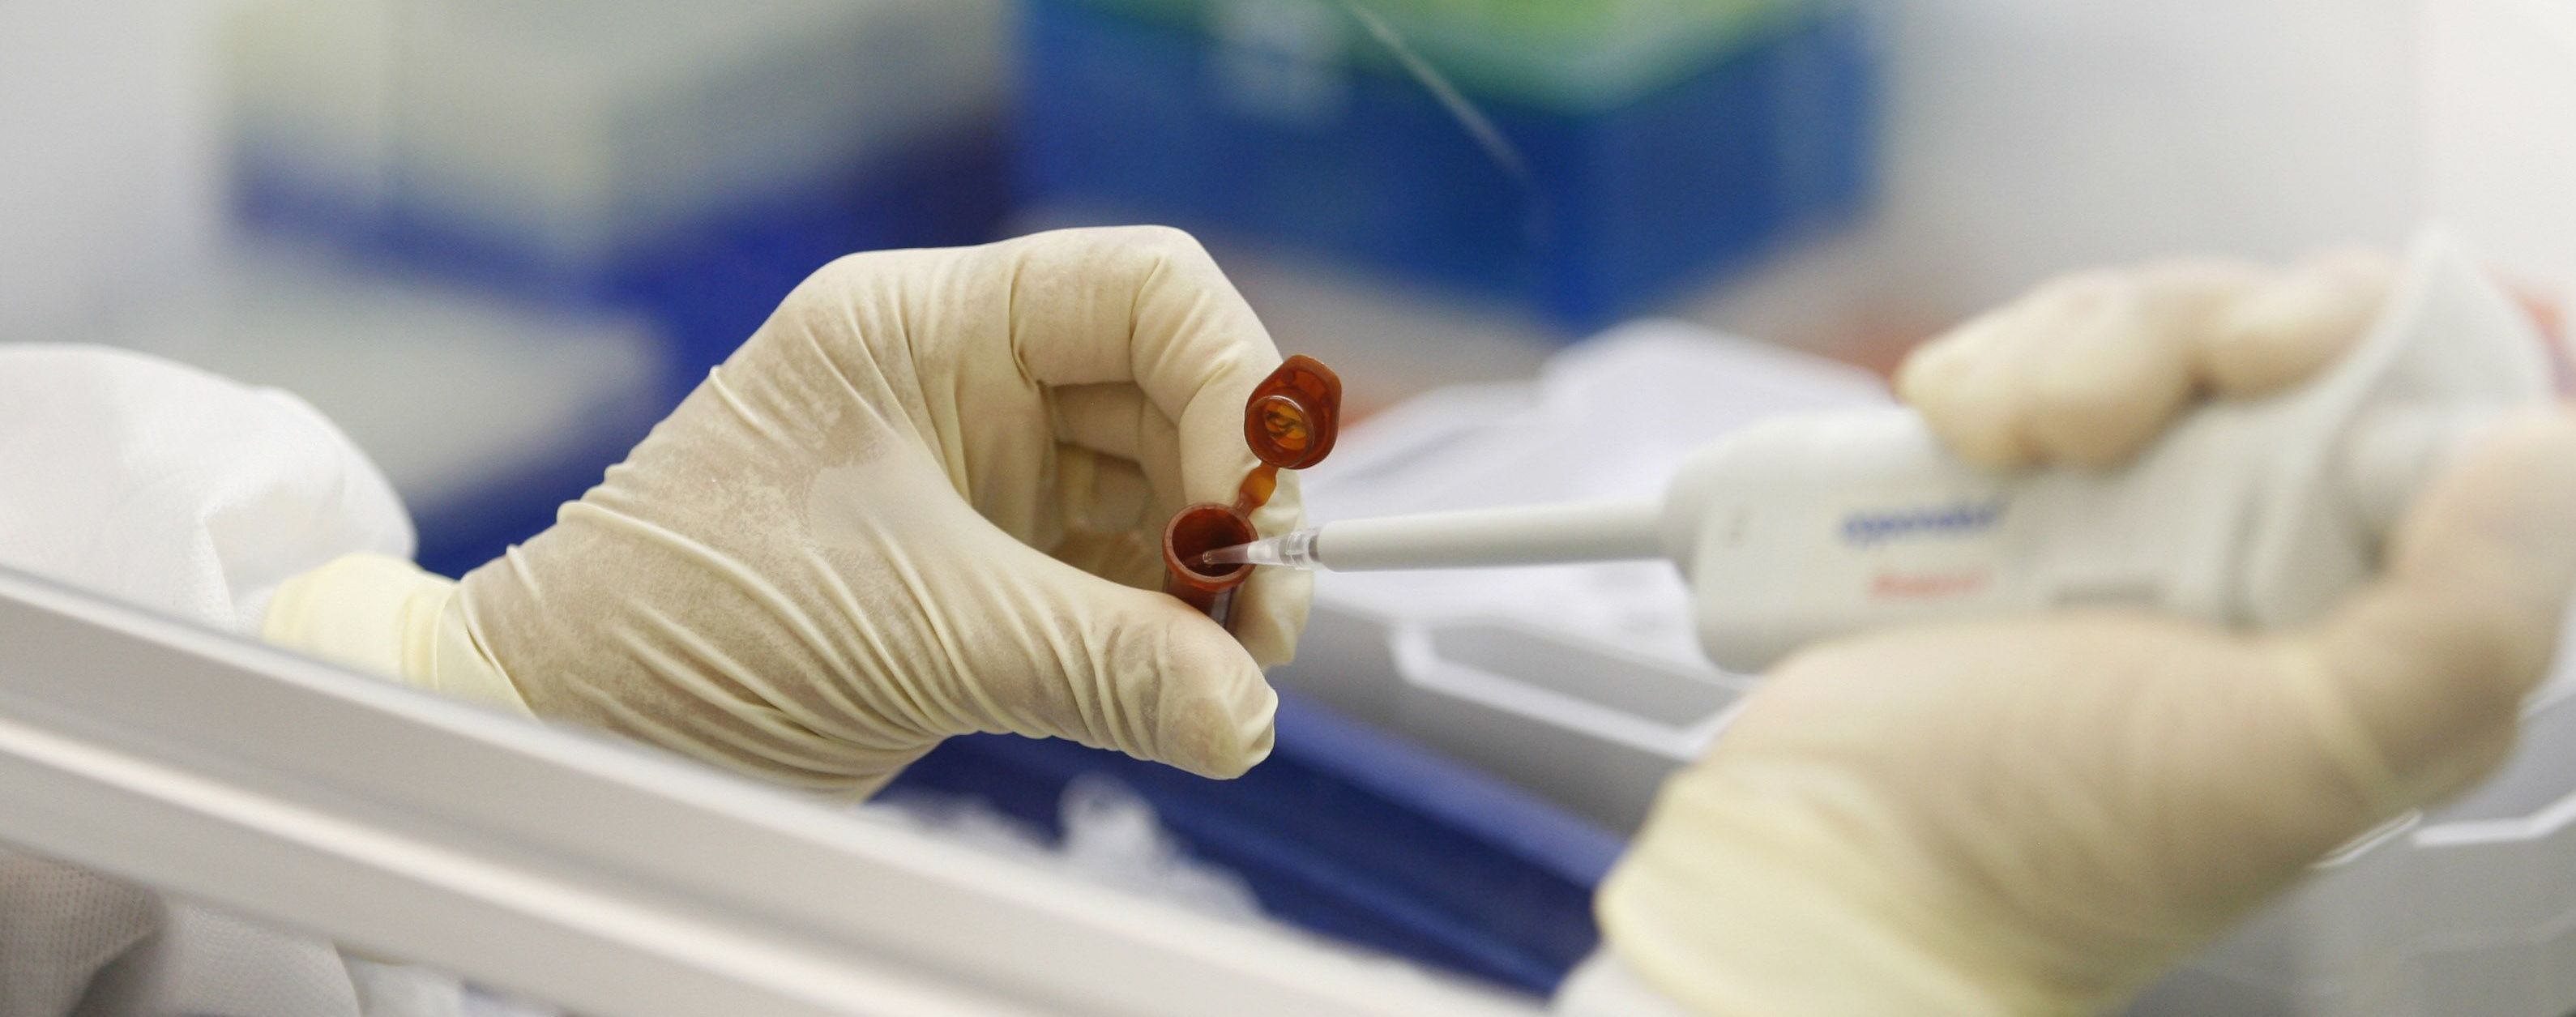 Спотворення ПЛР-тестів на коронавірус у Дніпрі: МОЗ розробляє план повторних перевірок